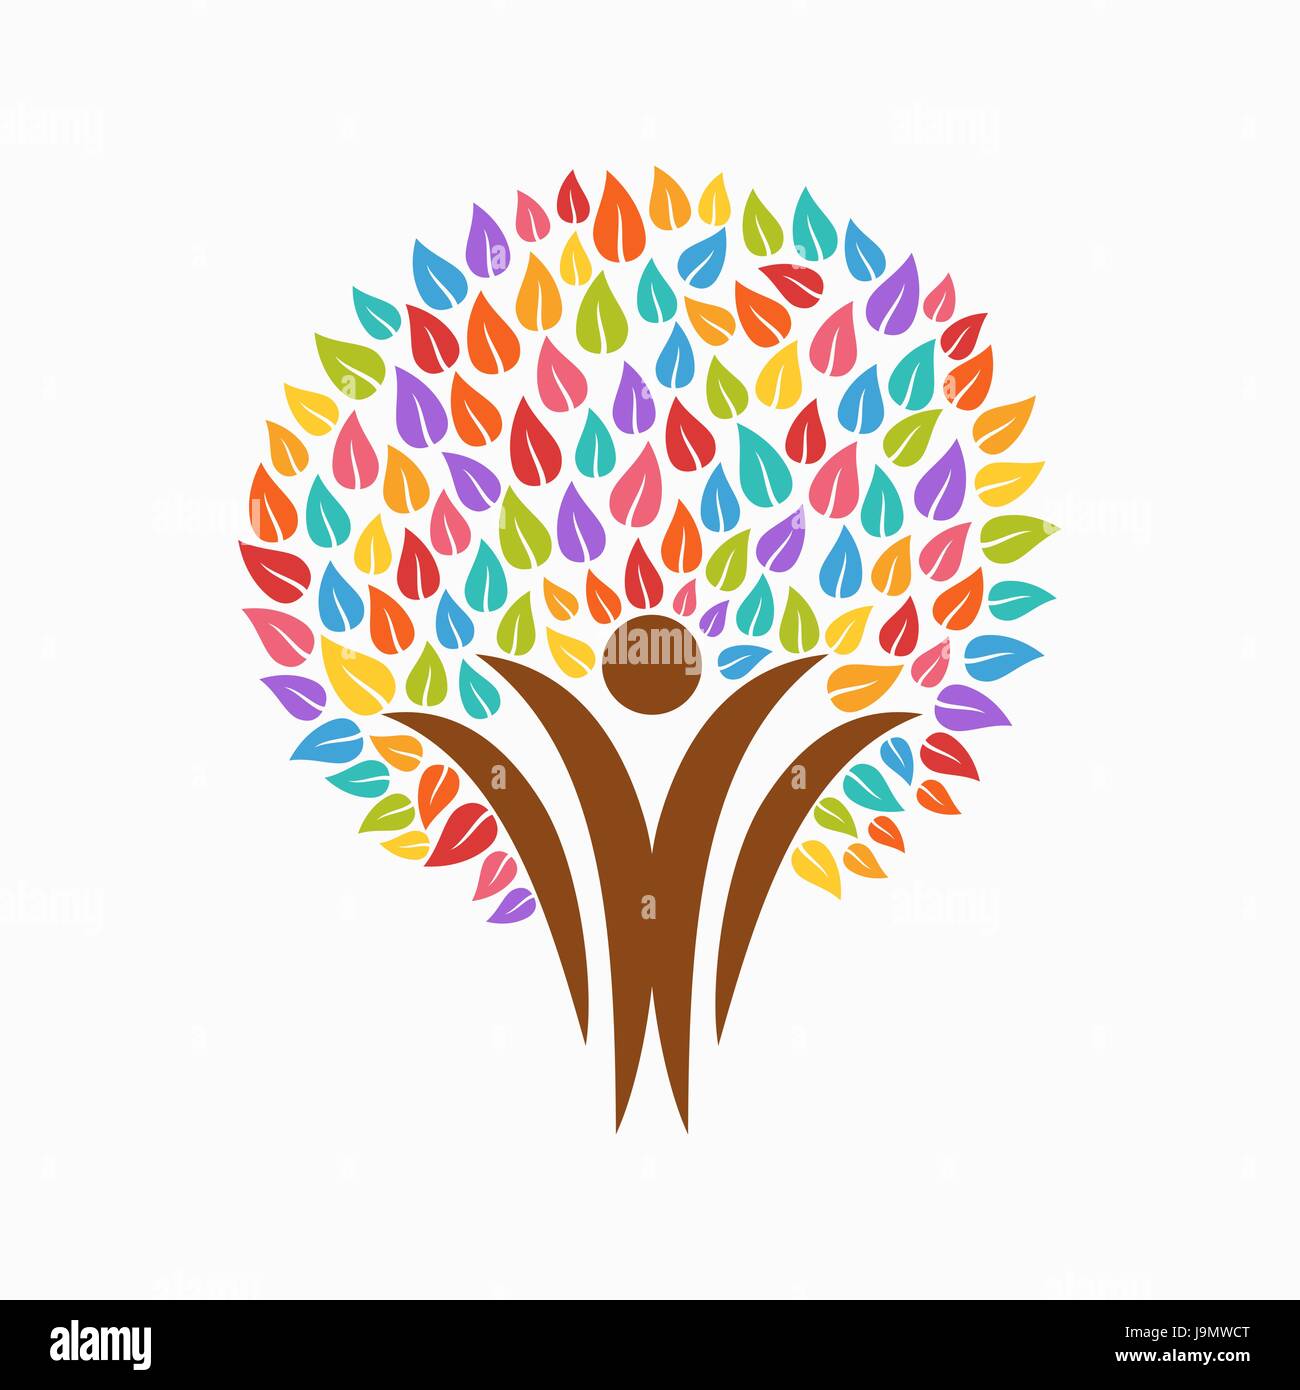 Bunter Baum-Symbol mit Menschen-Silhouetten. Konzept-Illustration für Organisation Hilfe, Umweltprojekt oder Sozialarbeit. EPS10 Vektor. Stock Vektor